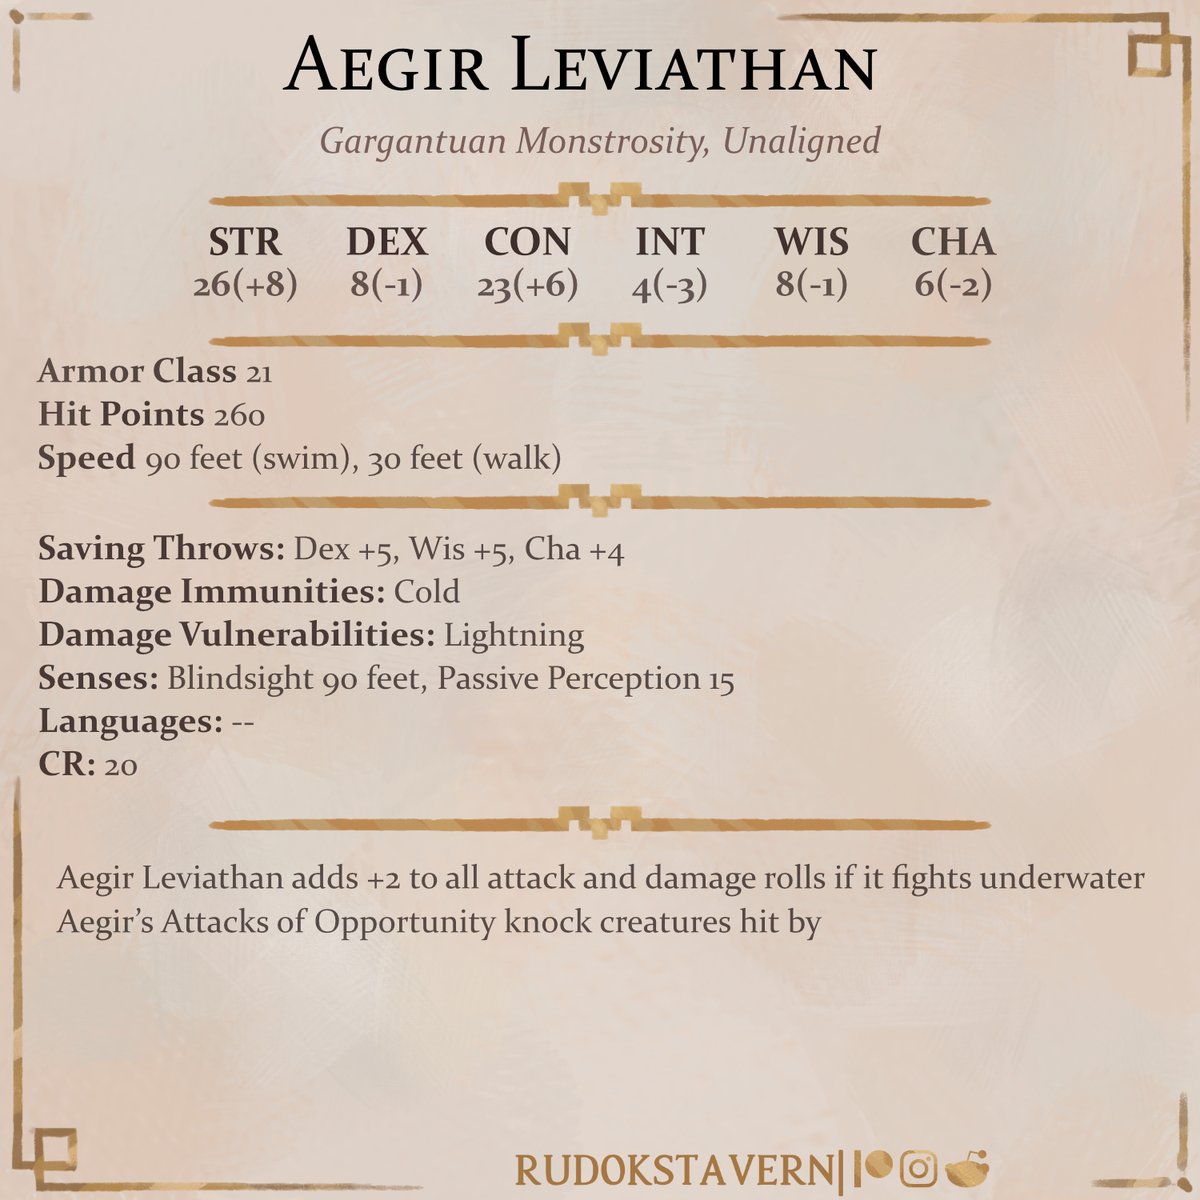 Aegir Leviathan, big fish from the Northern Sea...
#dnd #dungeonsanddragons #dndart #dndmonster